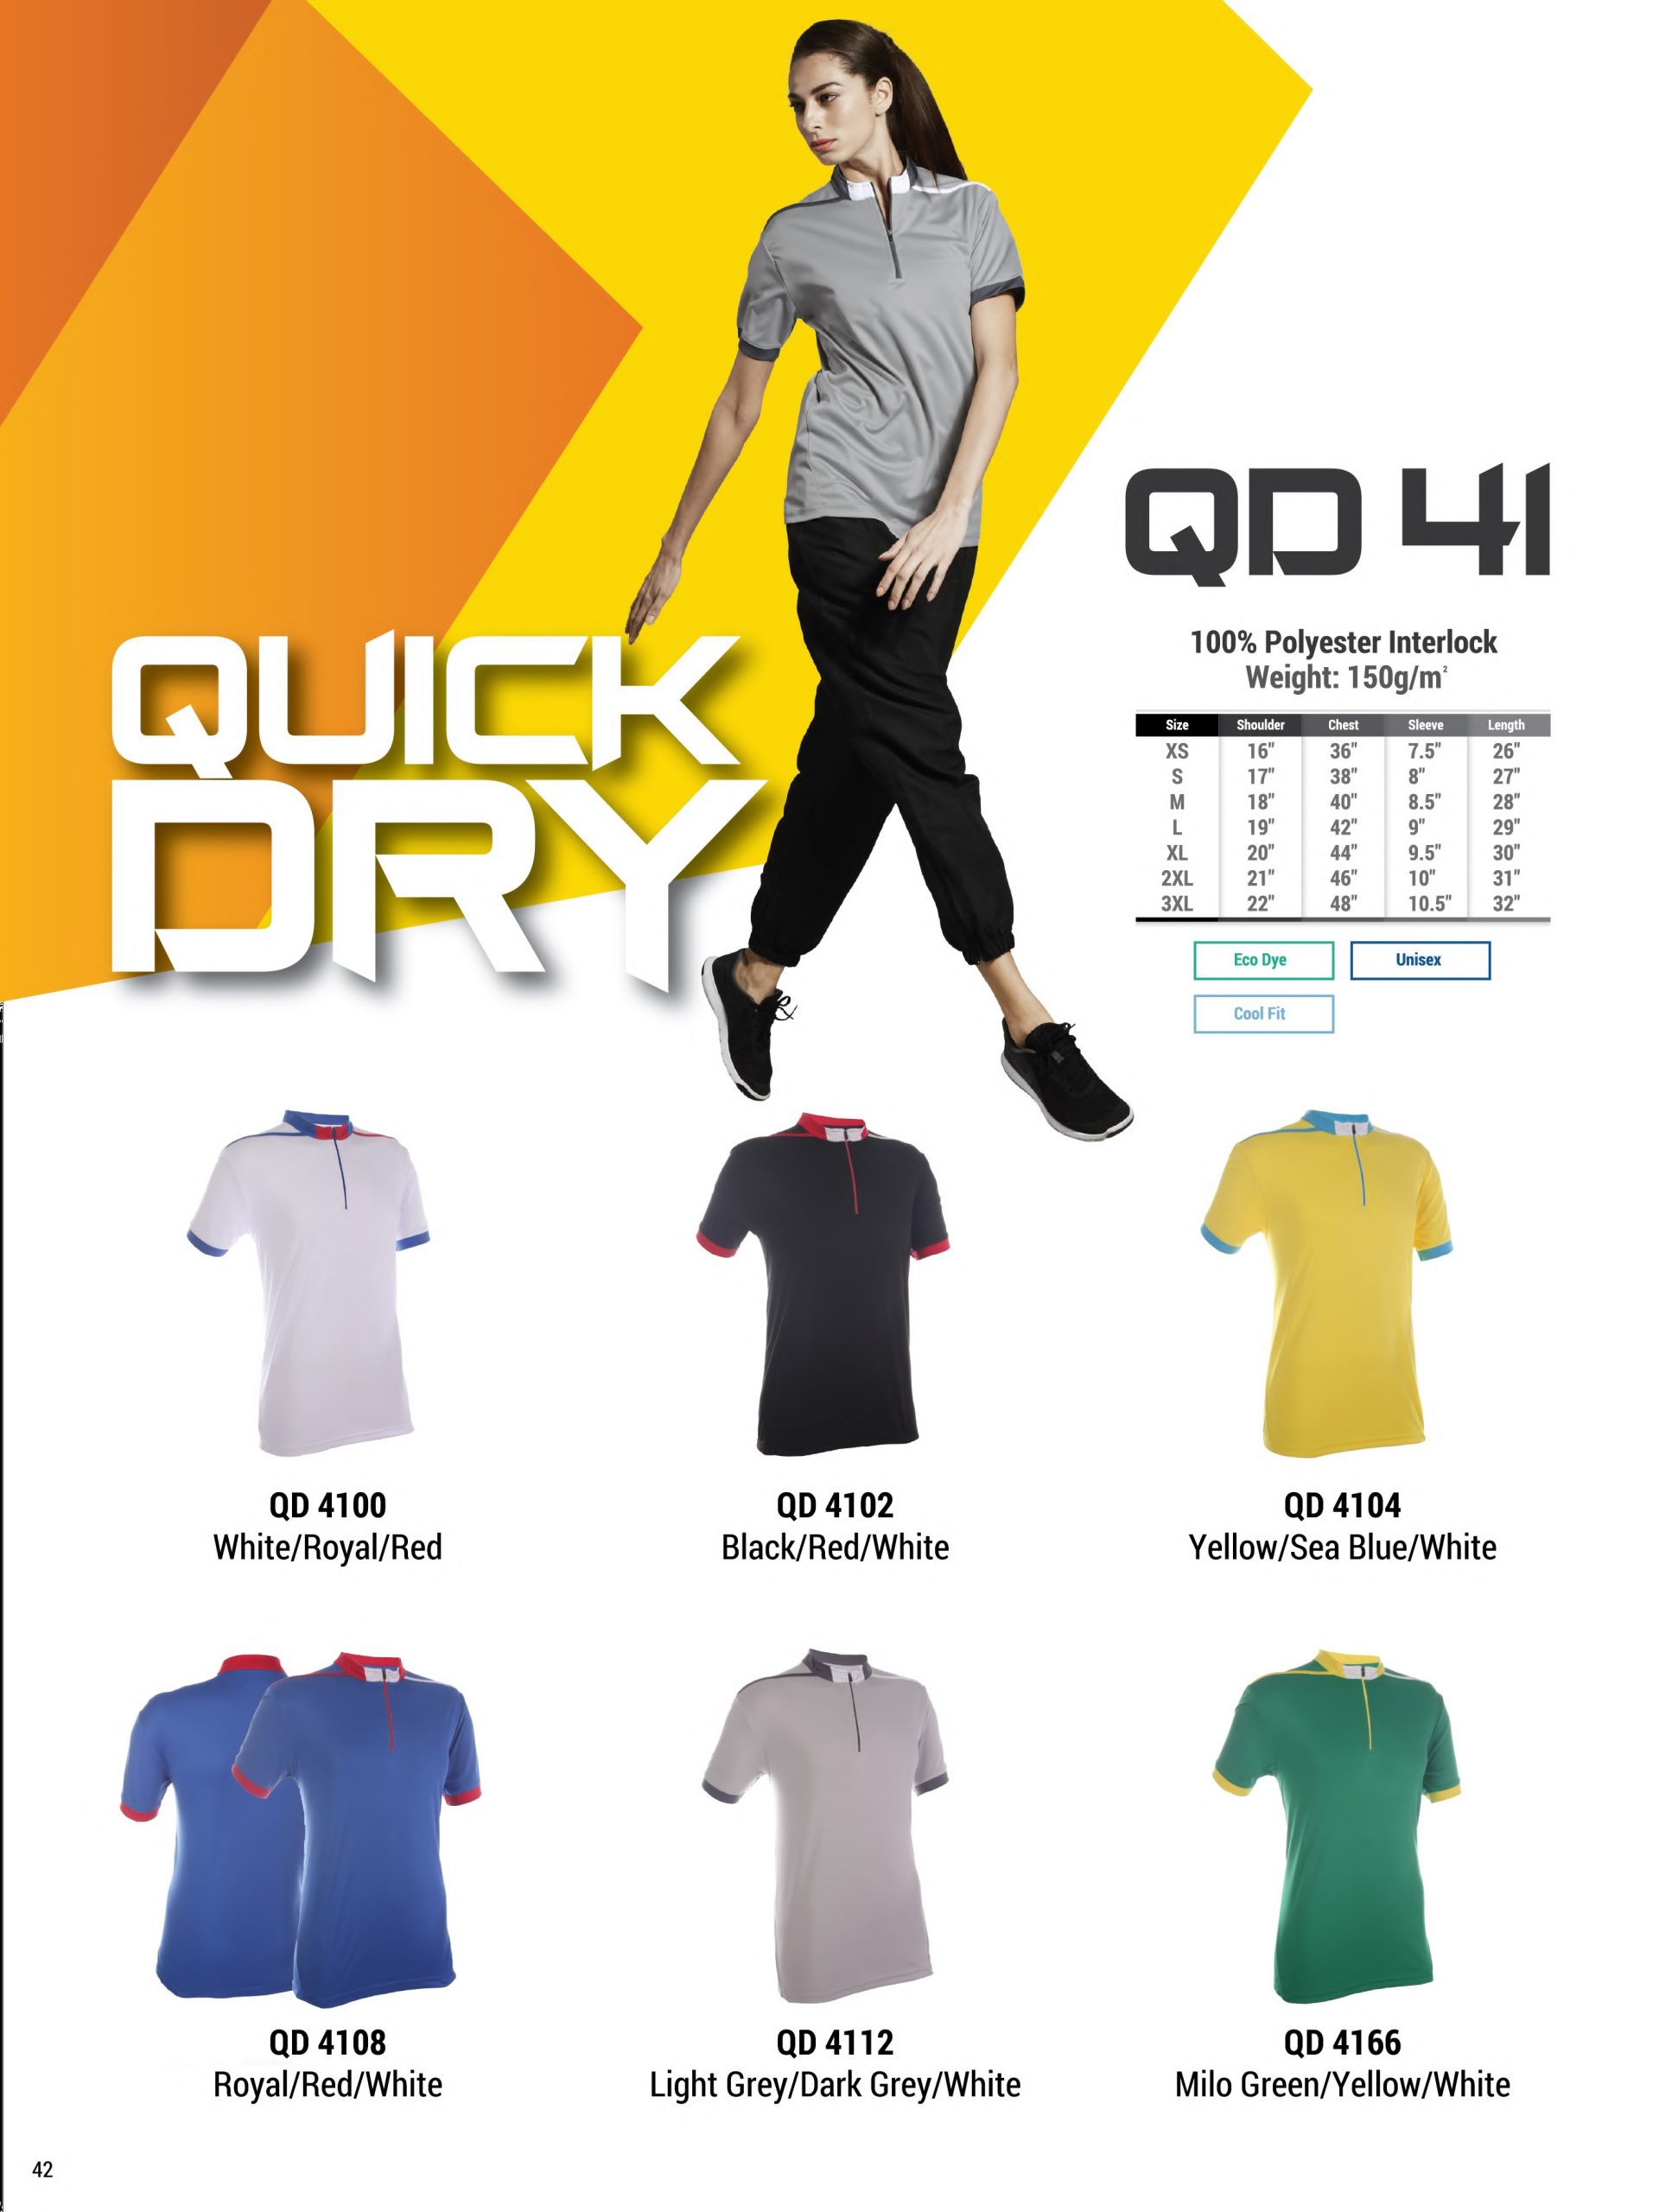 QD41 Quick Dry T-Shirt